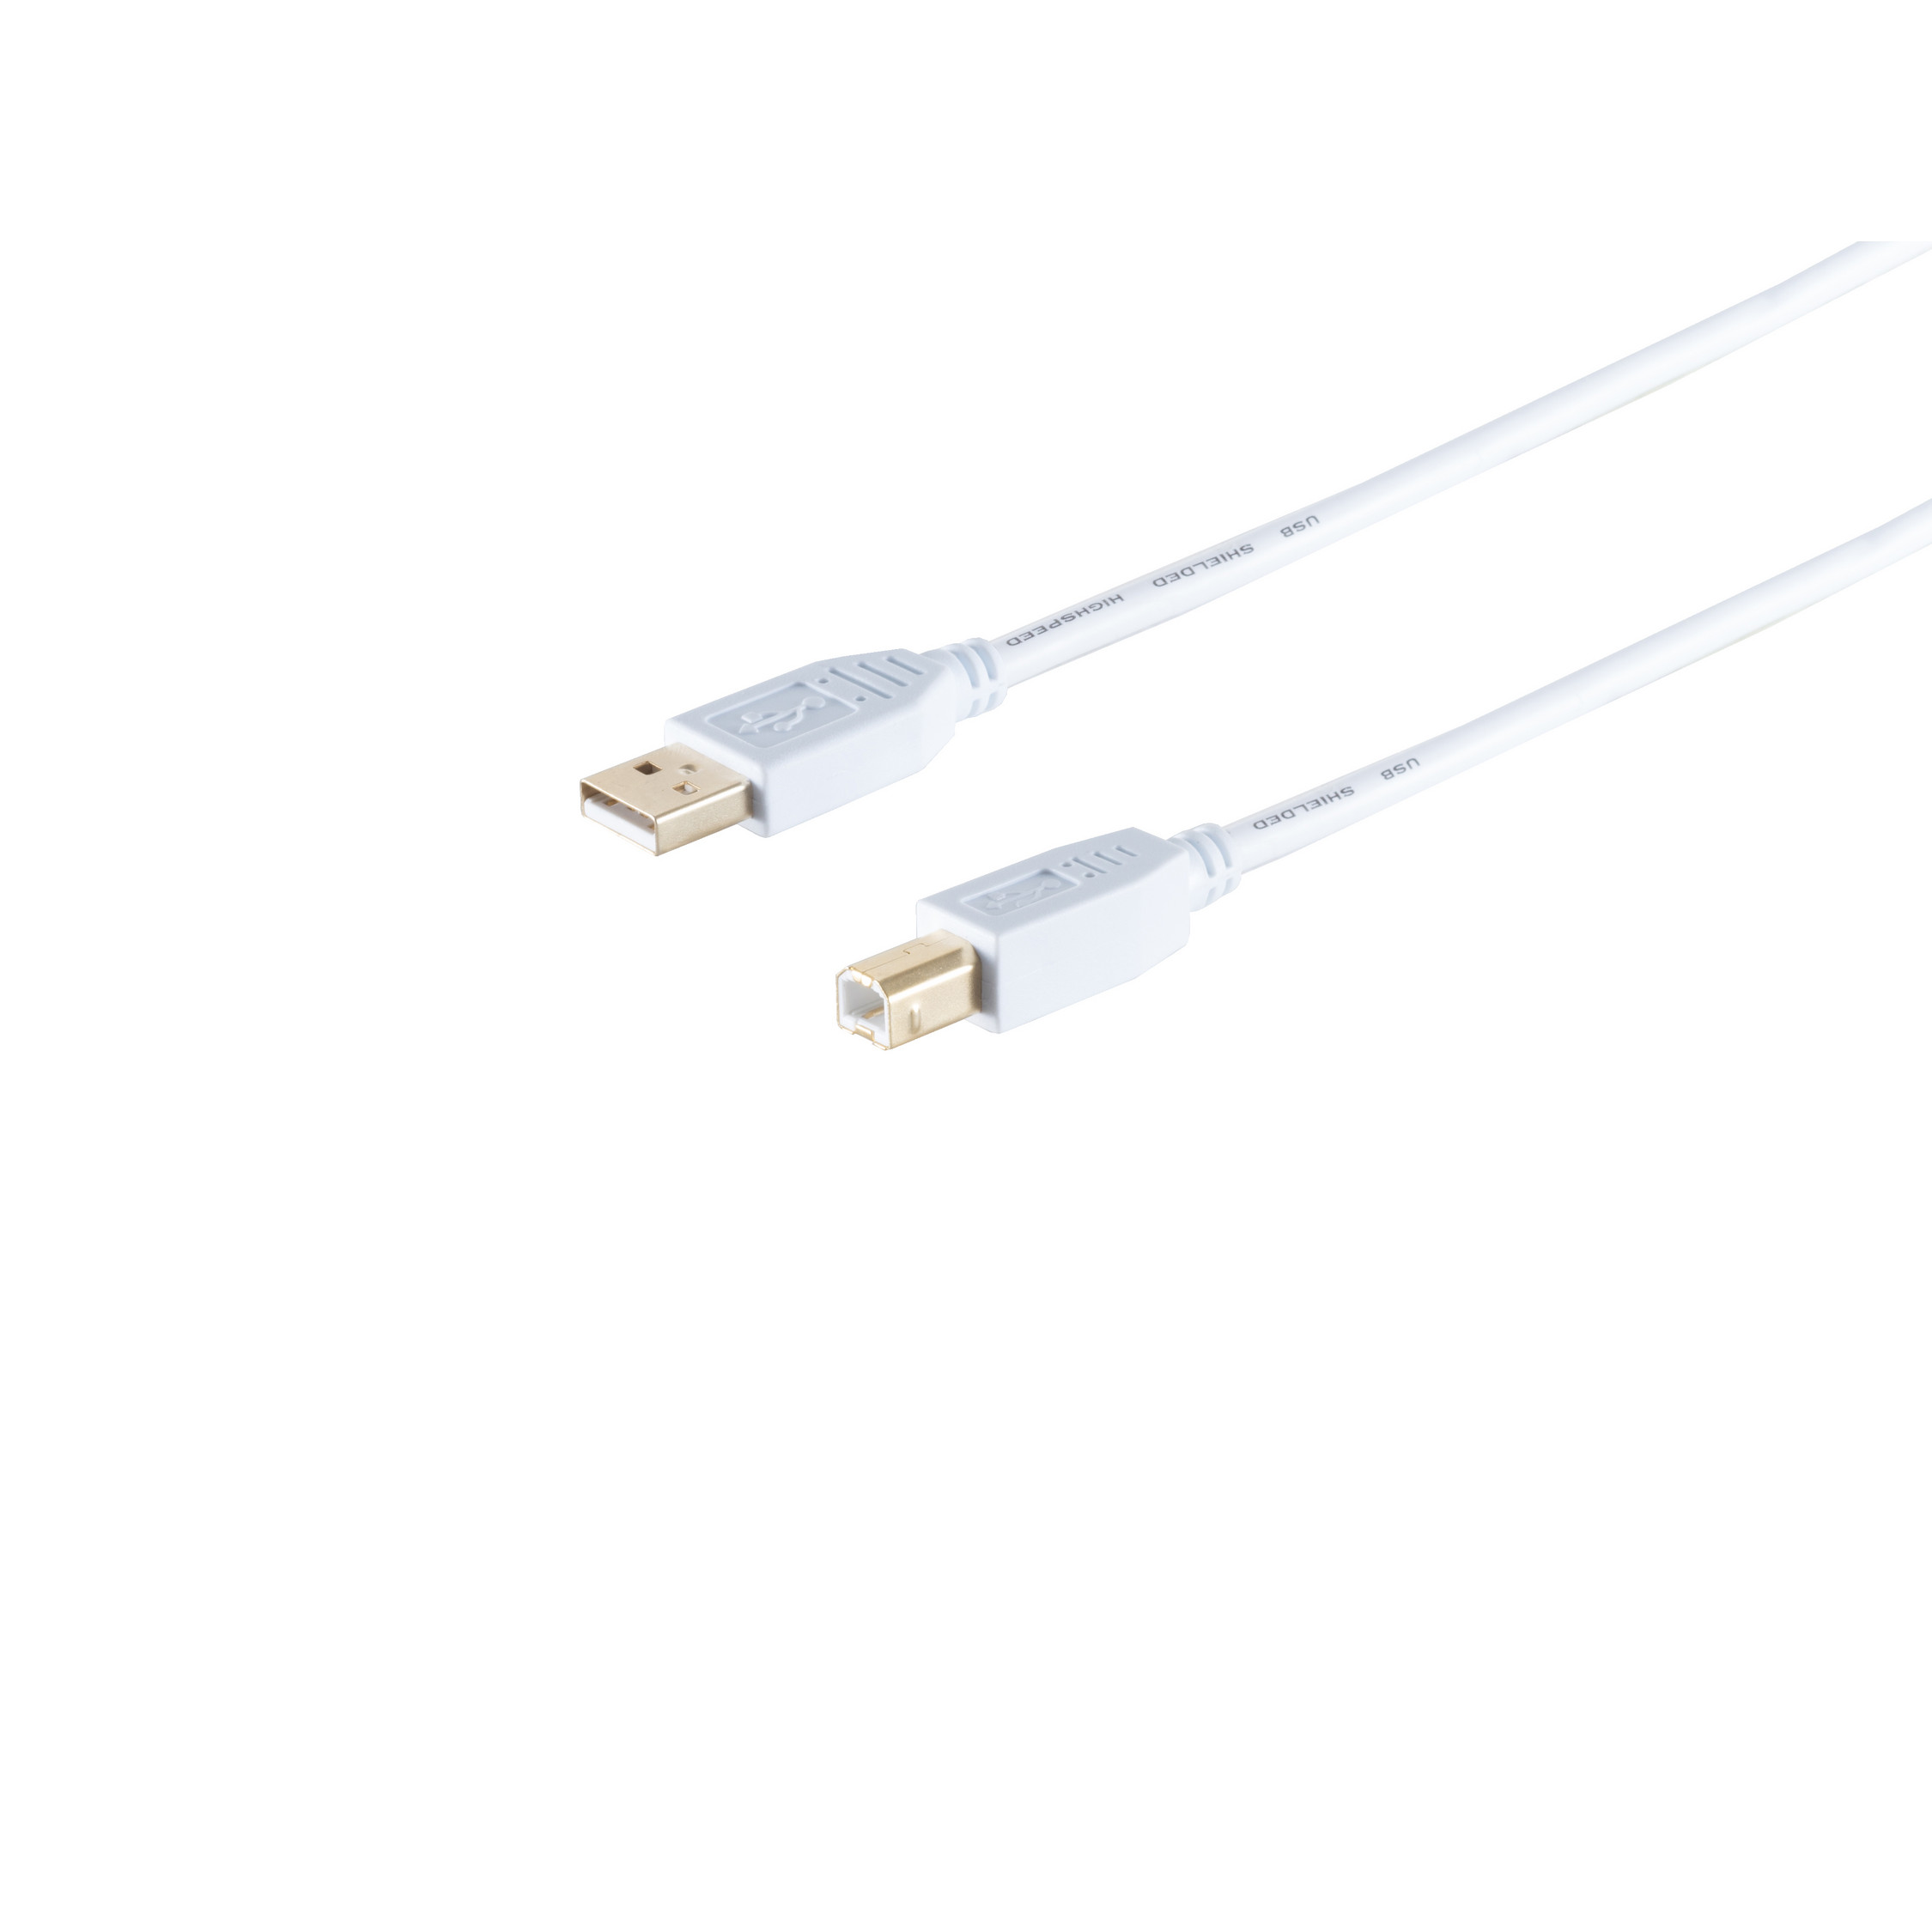 S/CONN MAXIMUM CONNECTIVITY 1,0m Kabel USB 2.0, Speed USB USB Stecker, Kabel, High 2.0 weiß, A/B